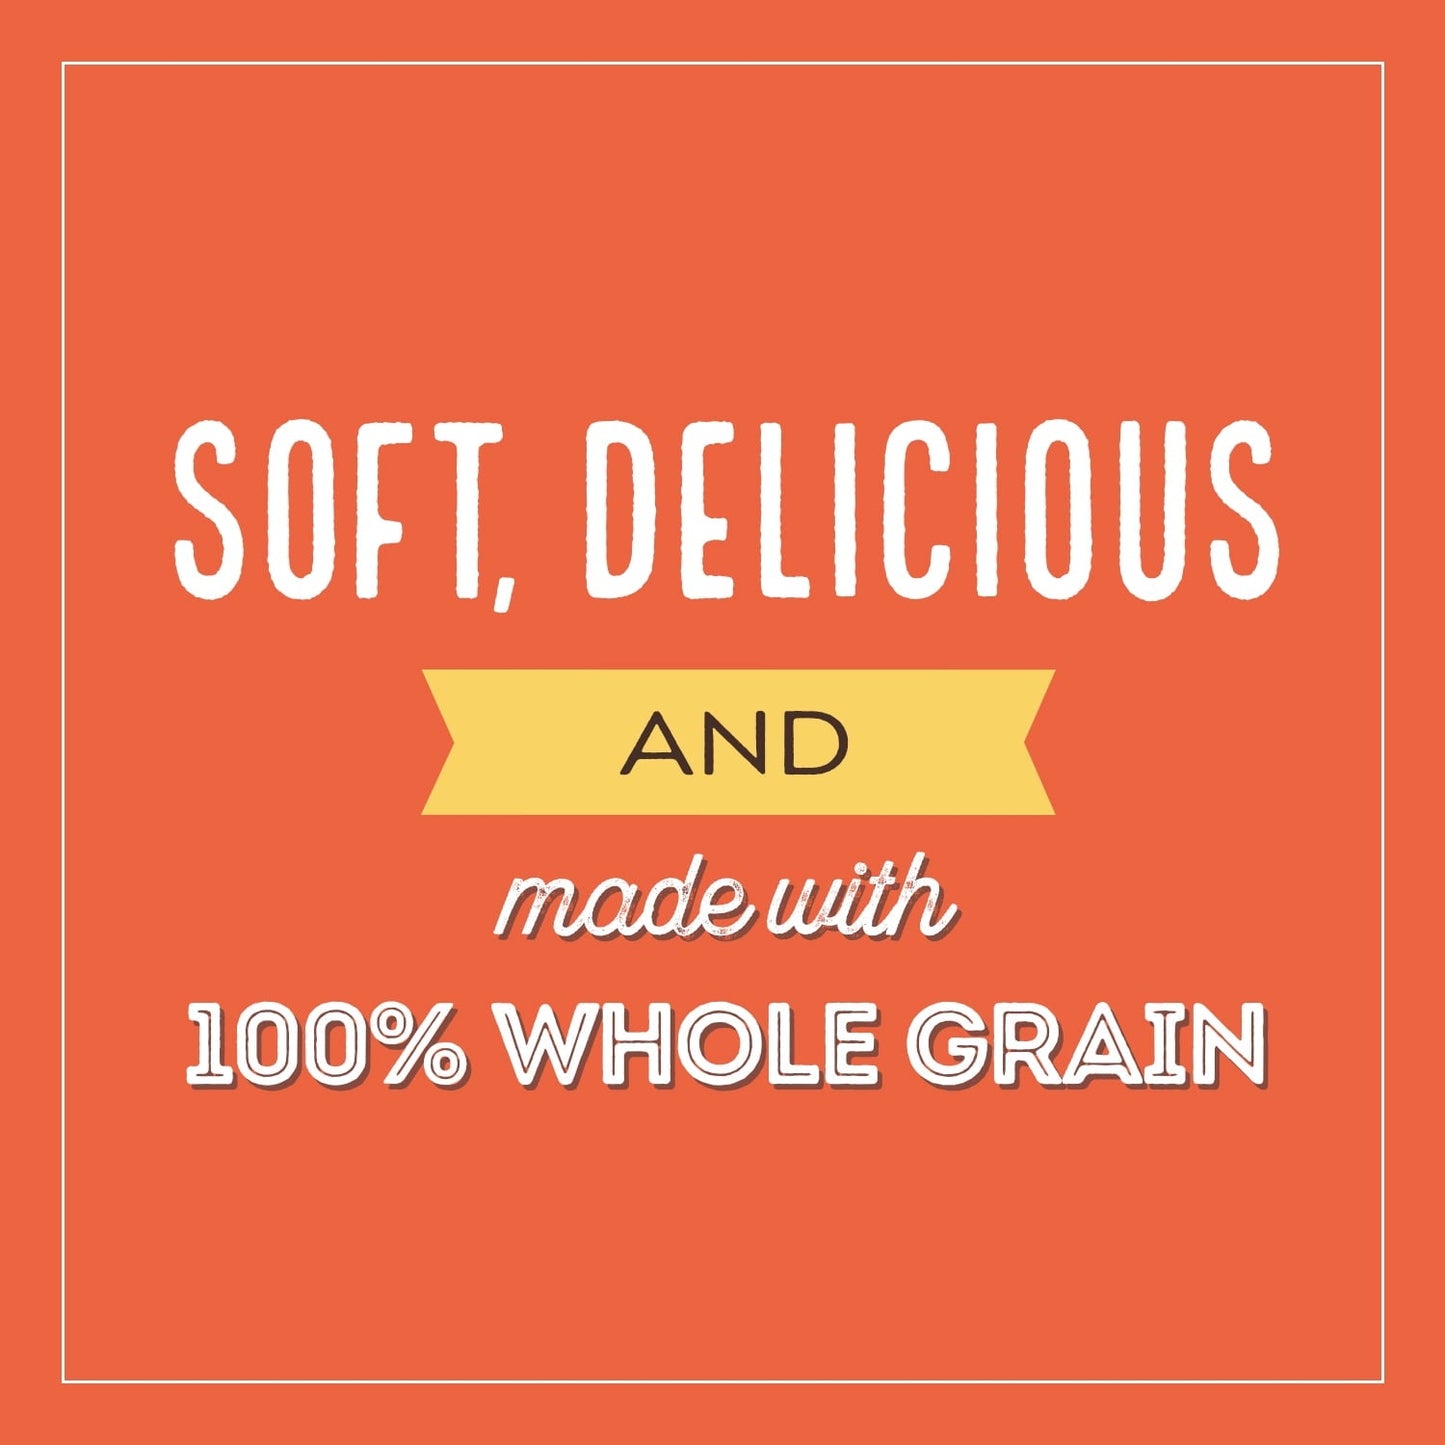 Nature's Own 100% Whole Grain Sliced Sandwich Bread, 20 oz